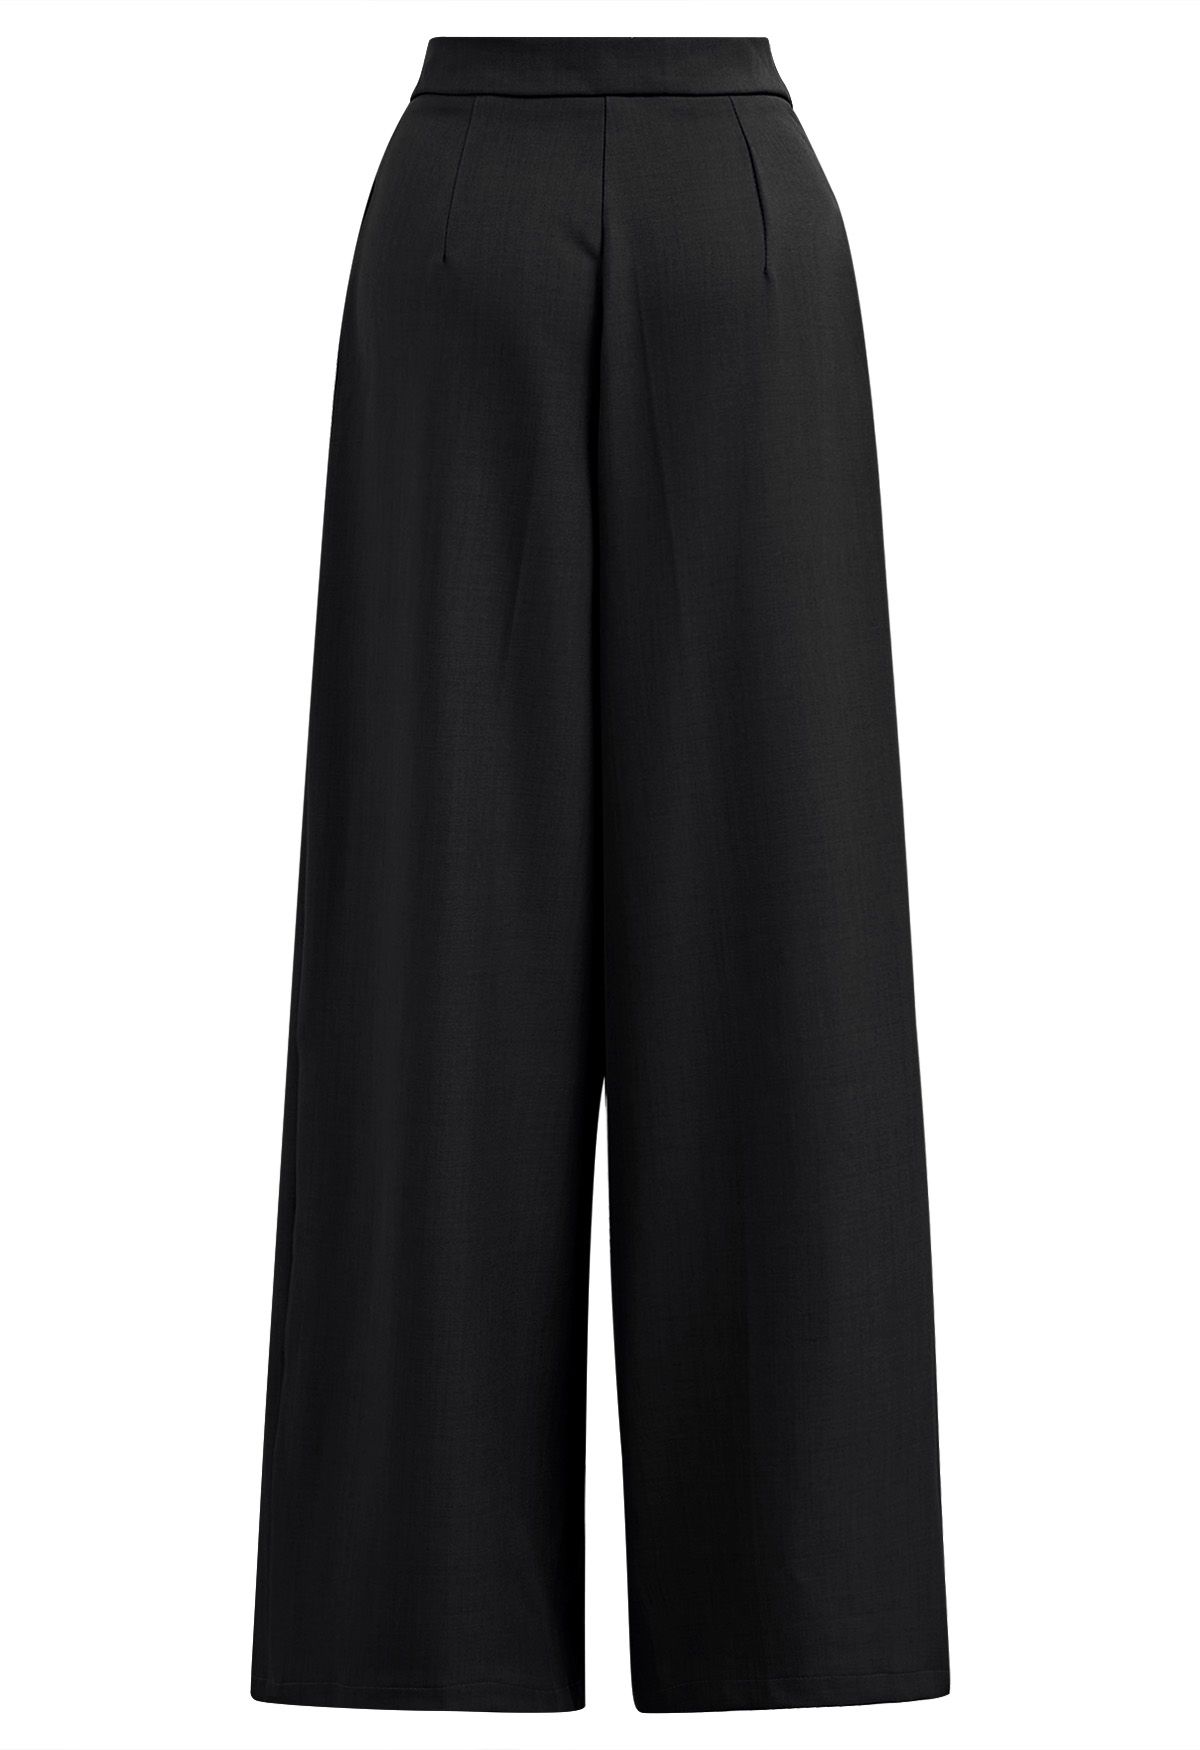 Pantalones rectos con bolsillos laterales y cinturón fijo en negro